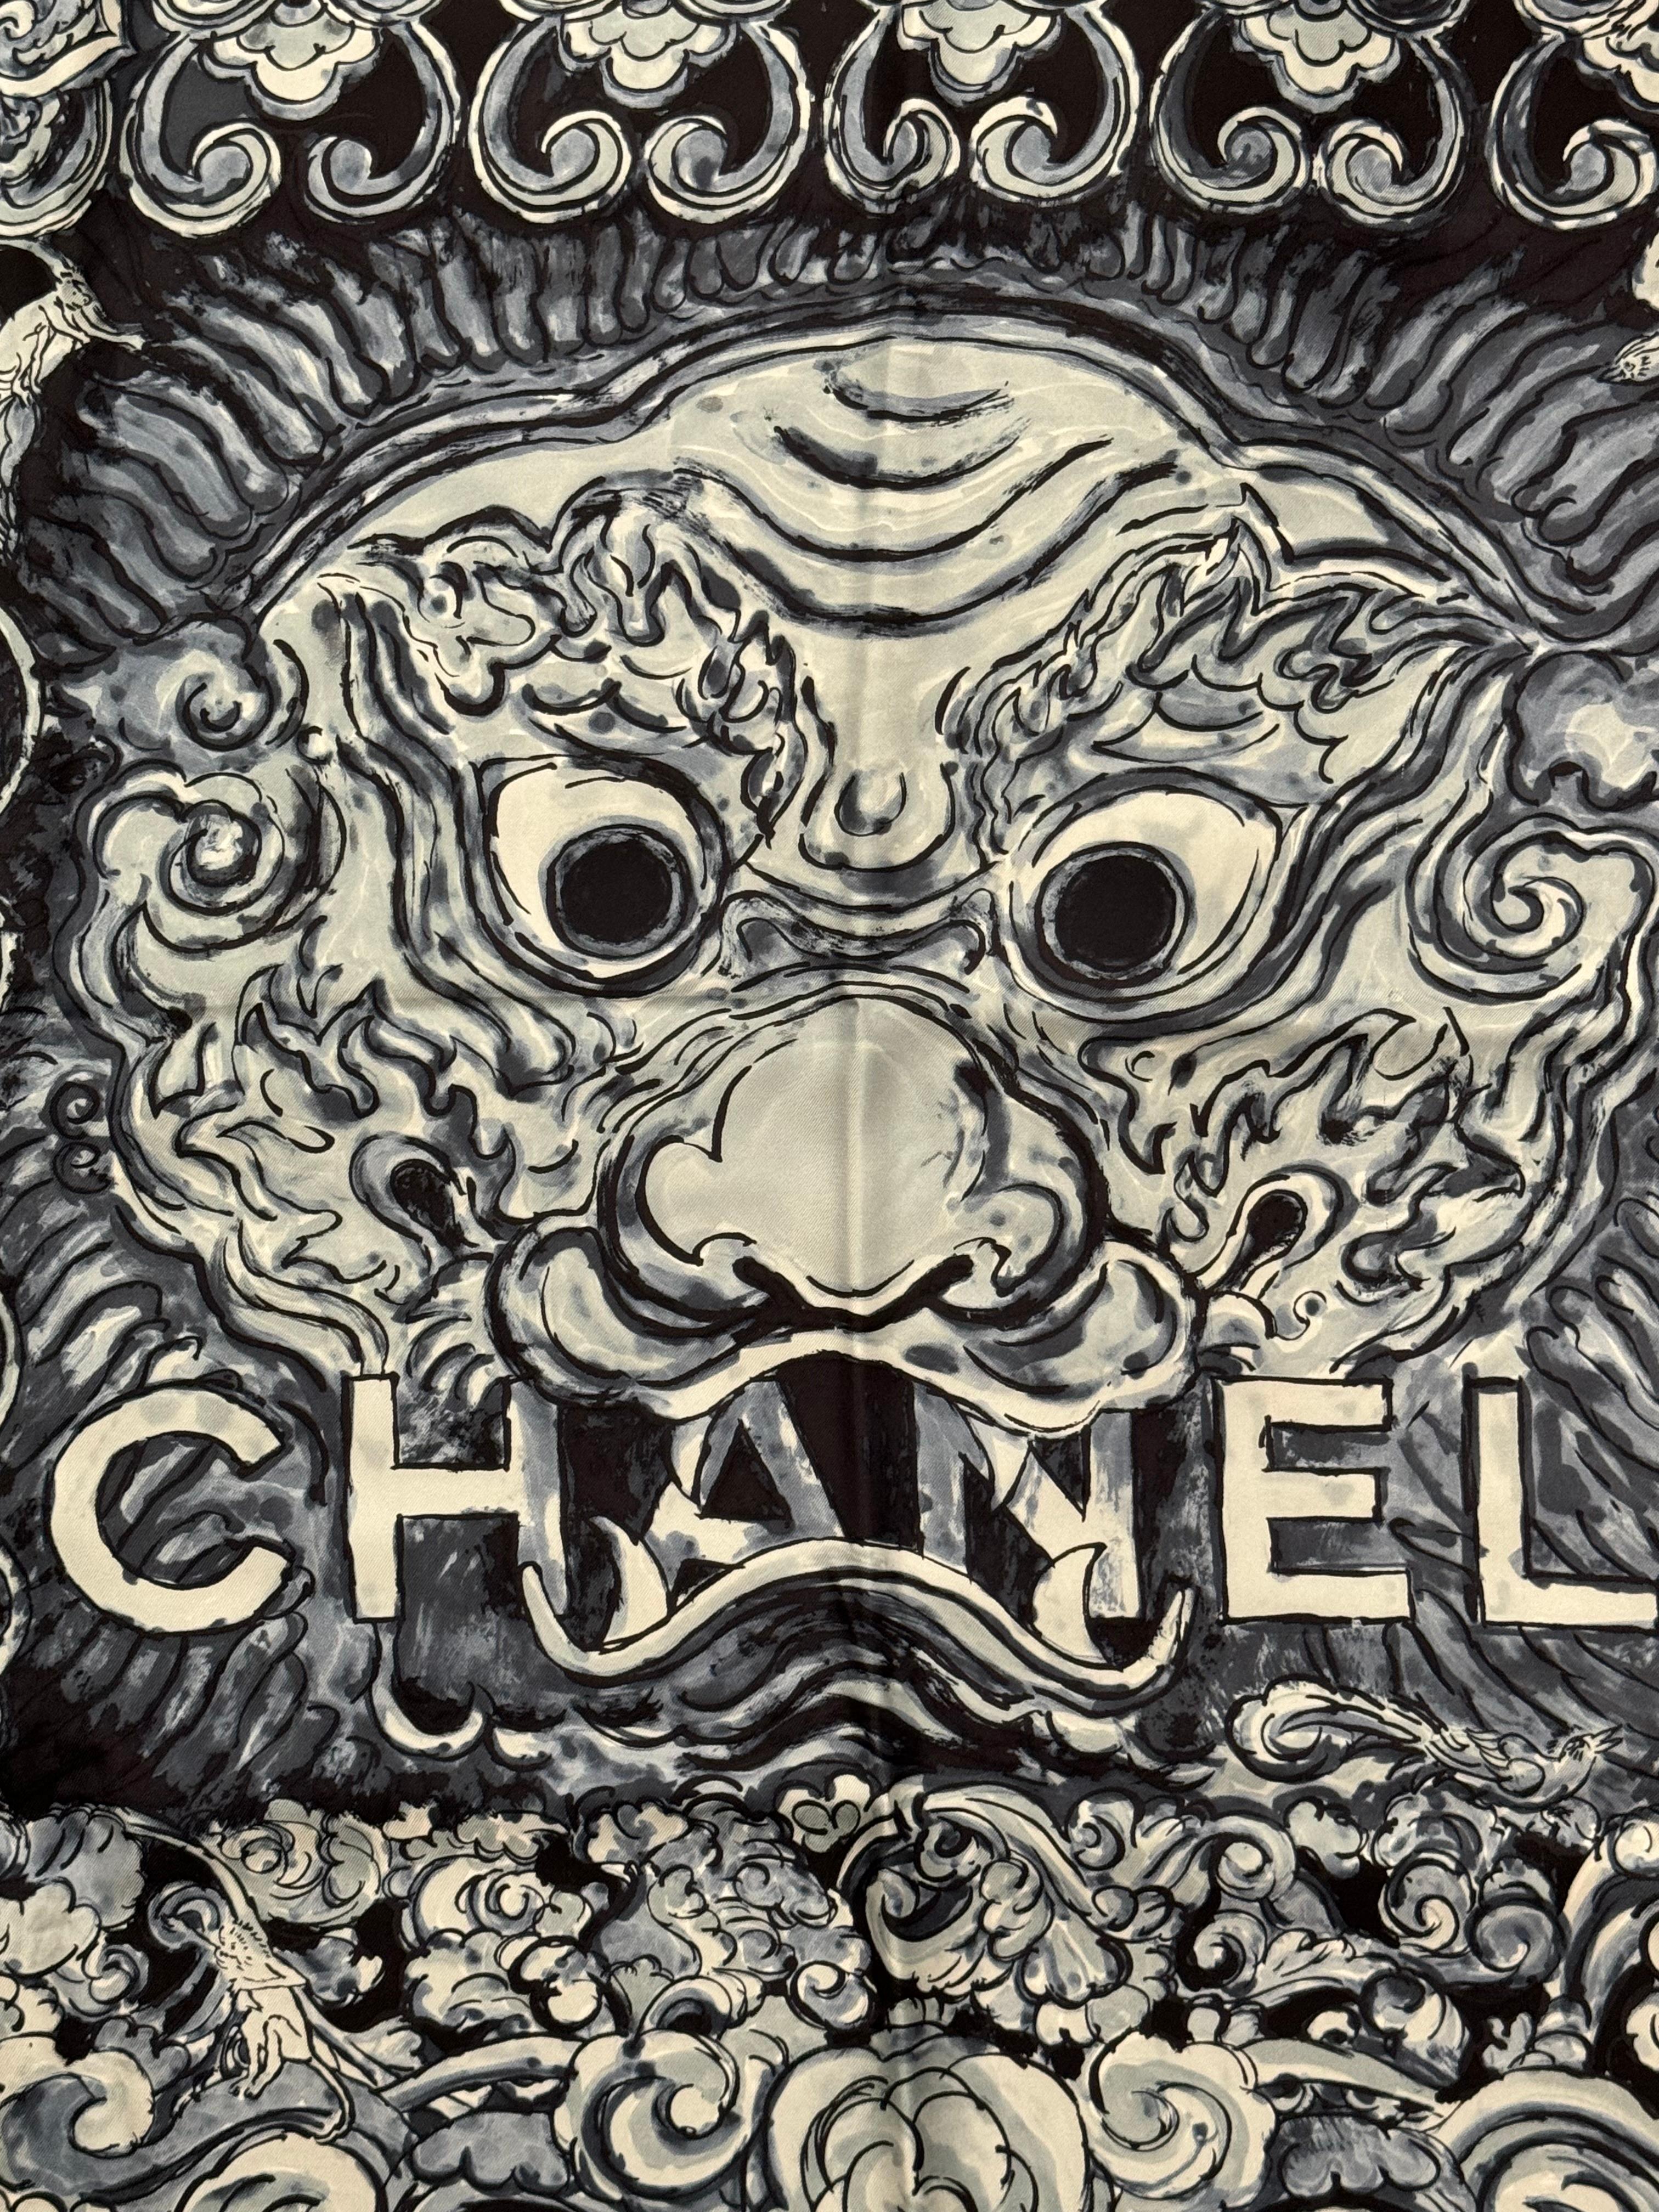 Rare Chanel métiers d'art Paris Shanghai pre fall 2010 foulard en soie avec boite d'origine, excellent état 